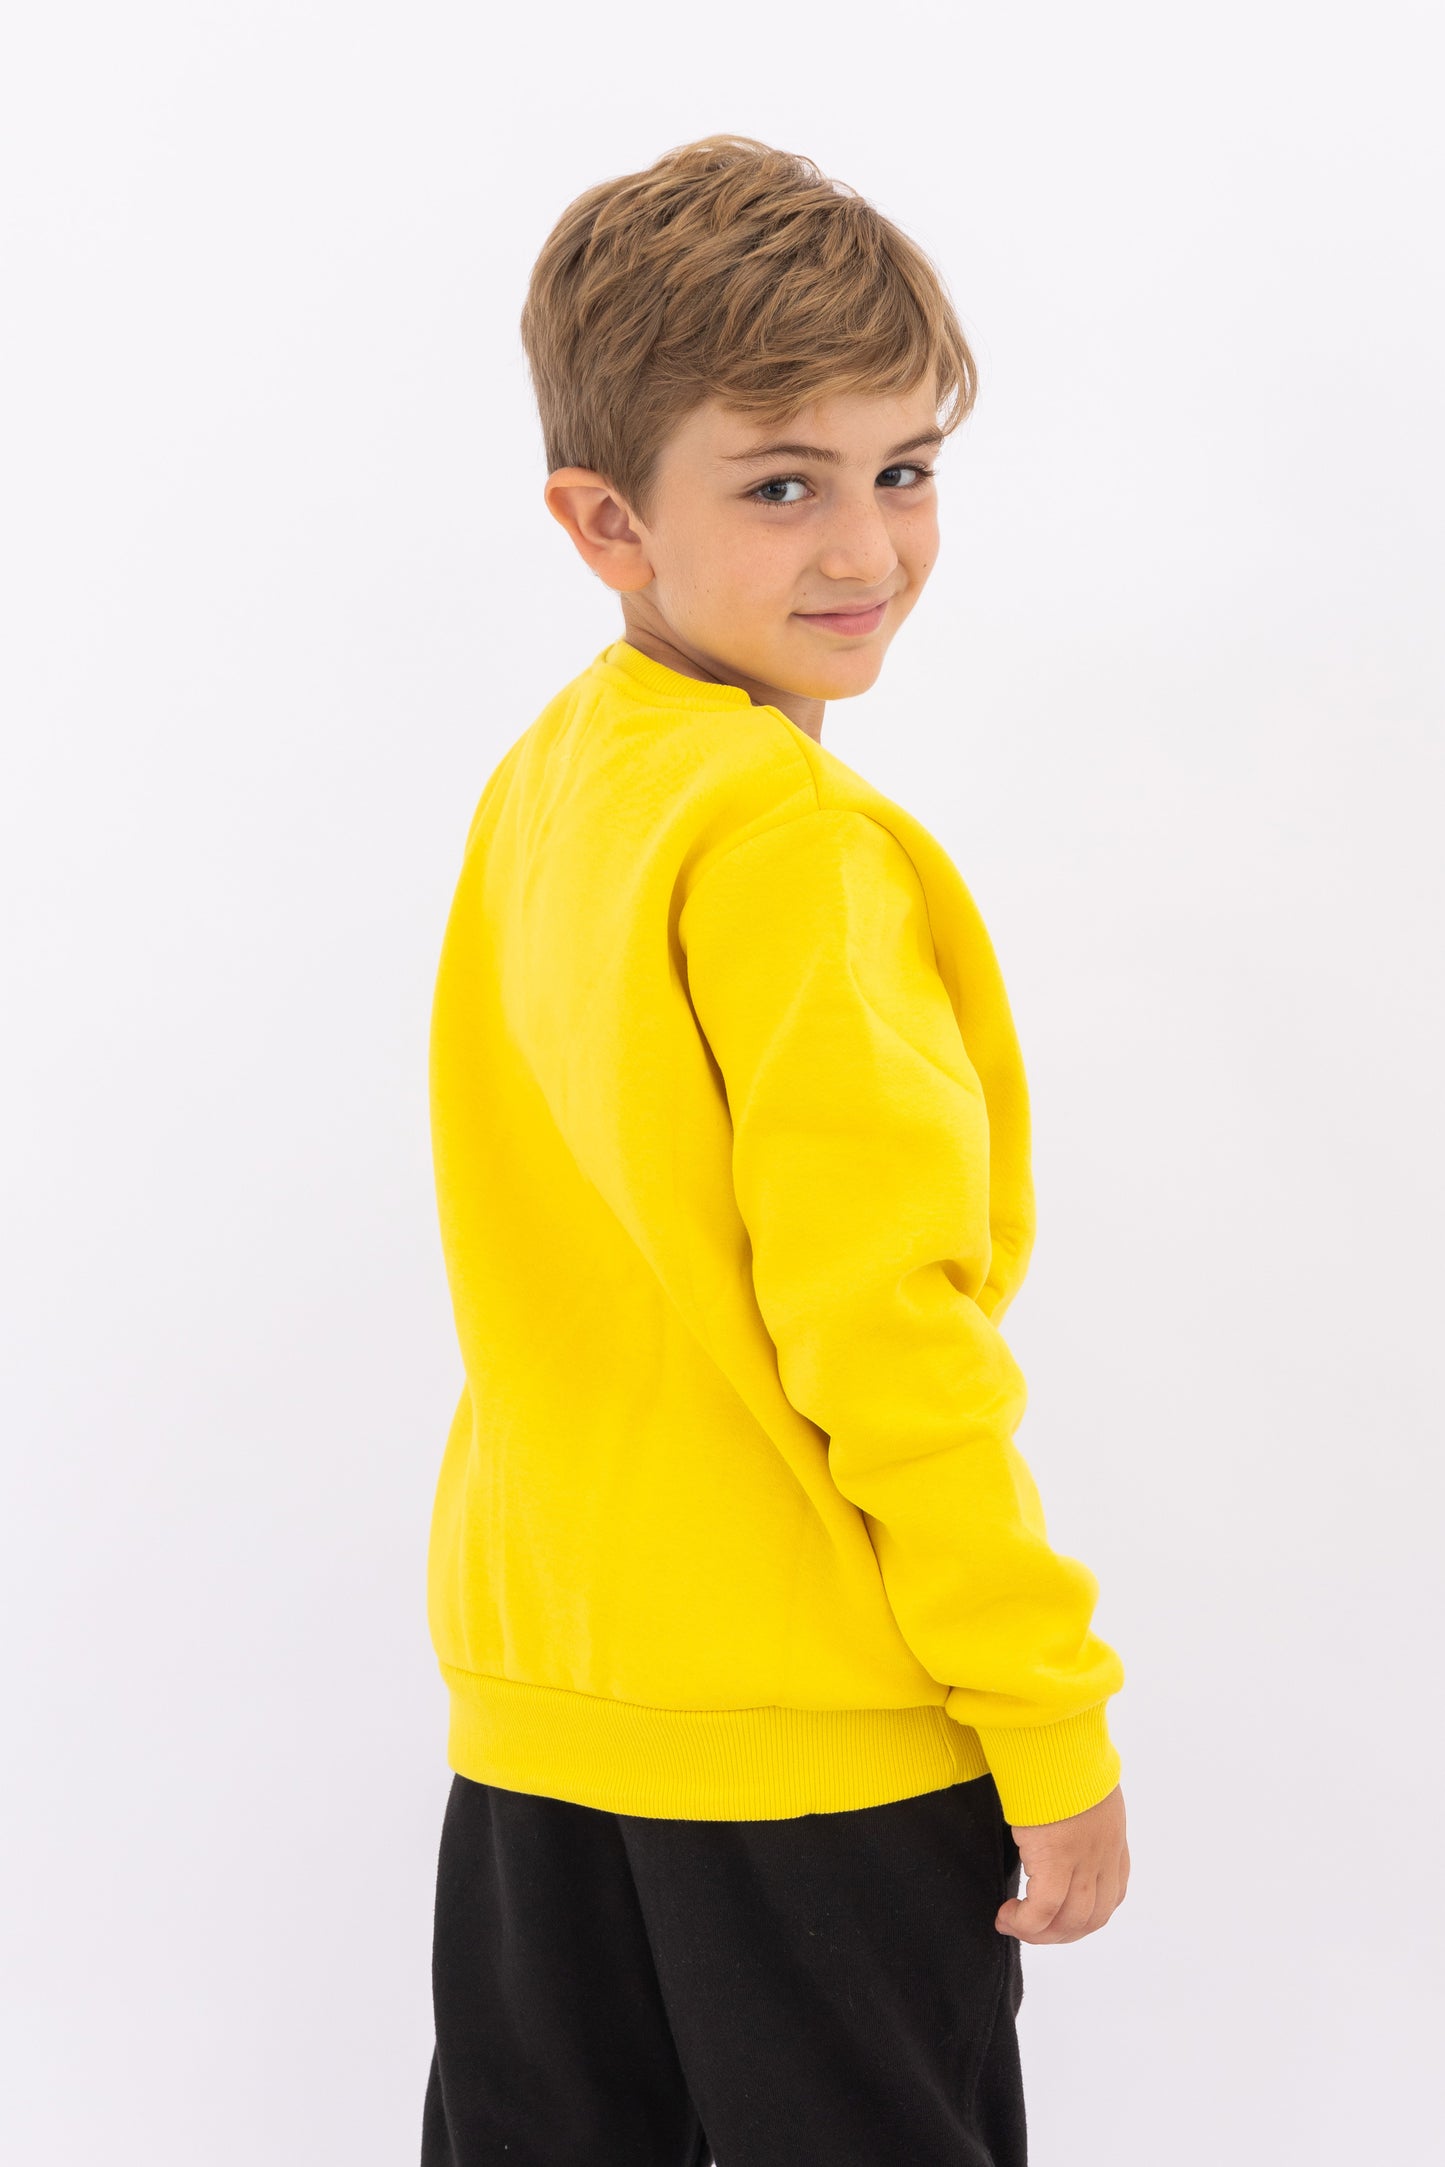 Yellow Sweatshirt - Unisex